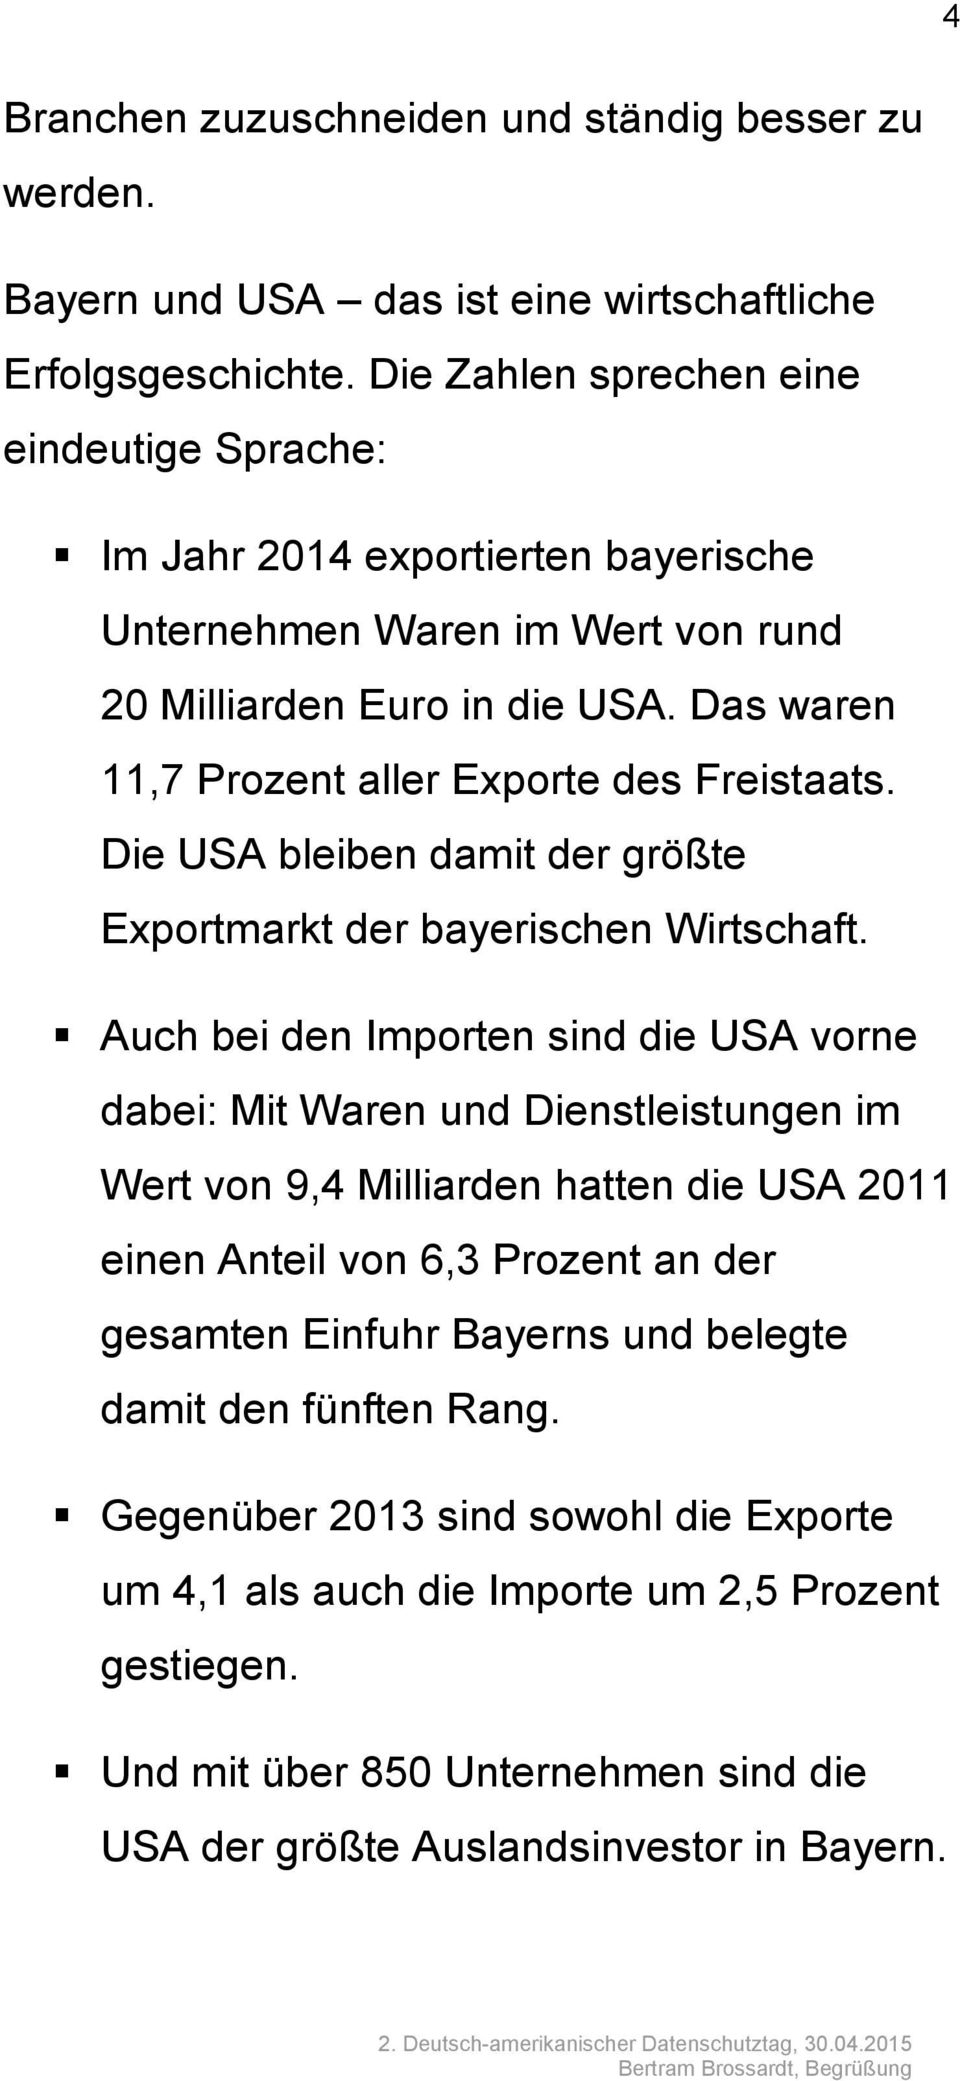 Das waren 11,7 Prozent aller Exporte des Freistaats. Die USA bleiben damit der größte Exportmarkt der bayerischen Wirtschaft.